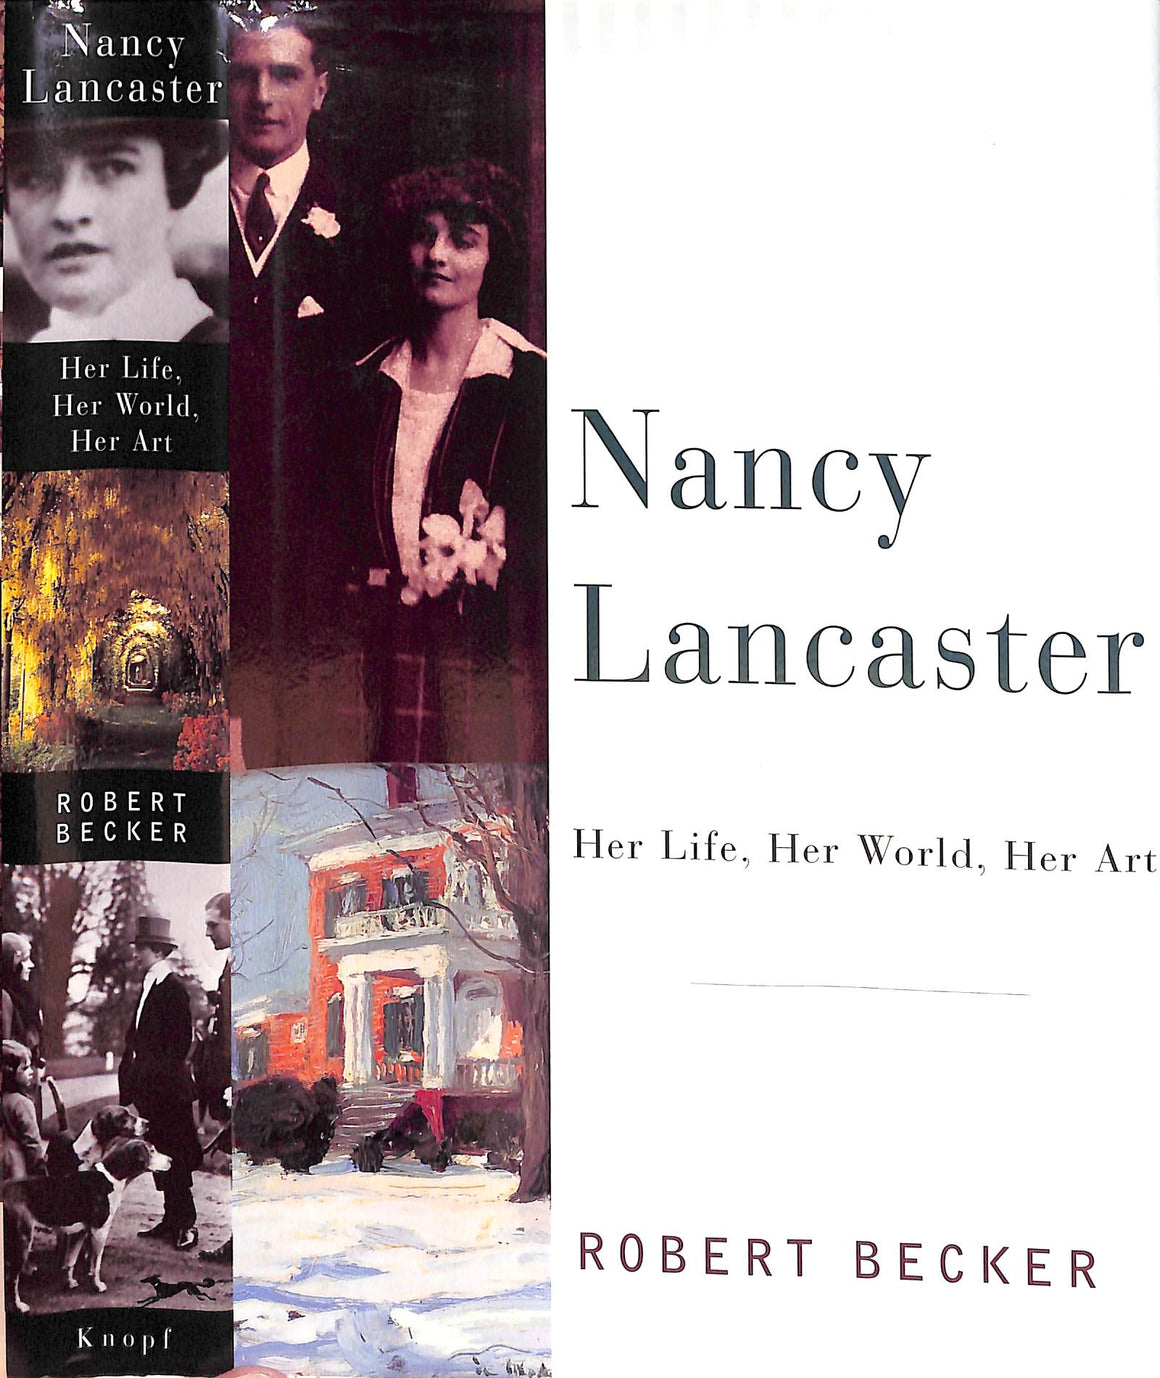 "Nancy Lancaster: Her Life, Her World, Her Art" 1996 BECKER, Robert